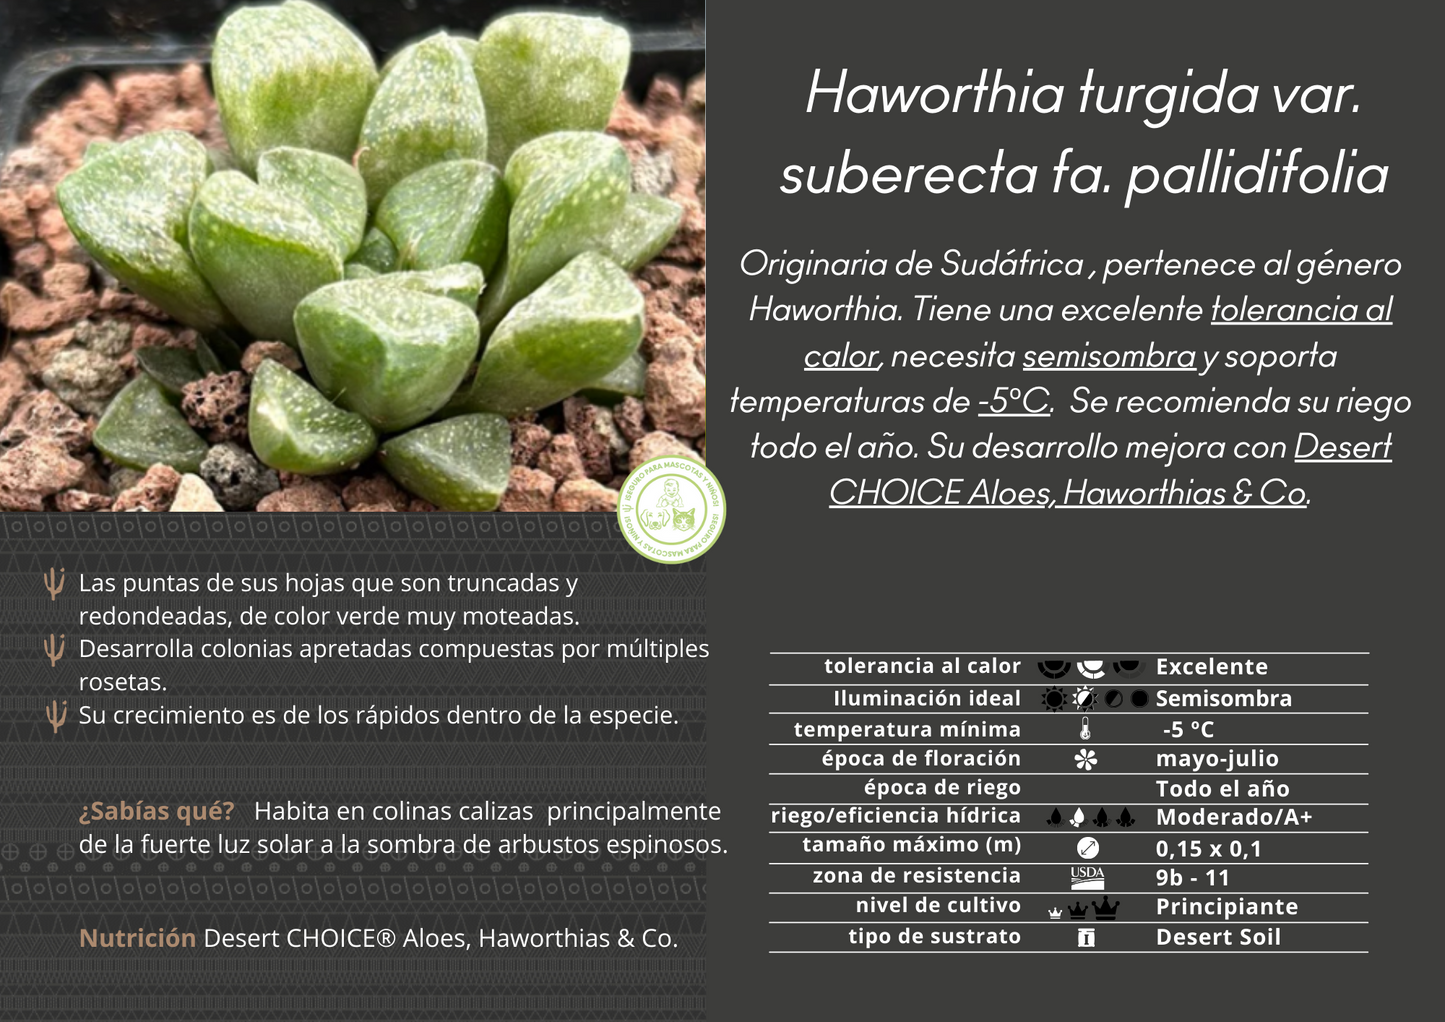 Haworthia turgida var. suberecta fa. pallidifolia